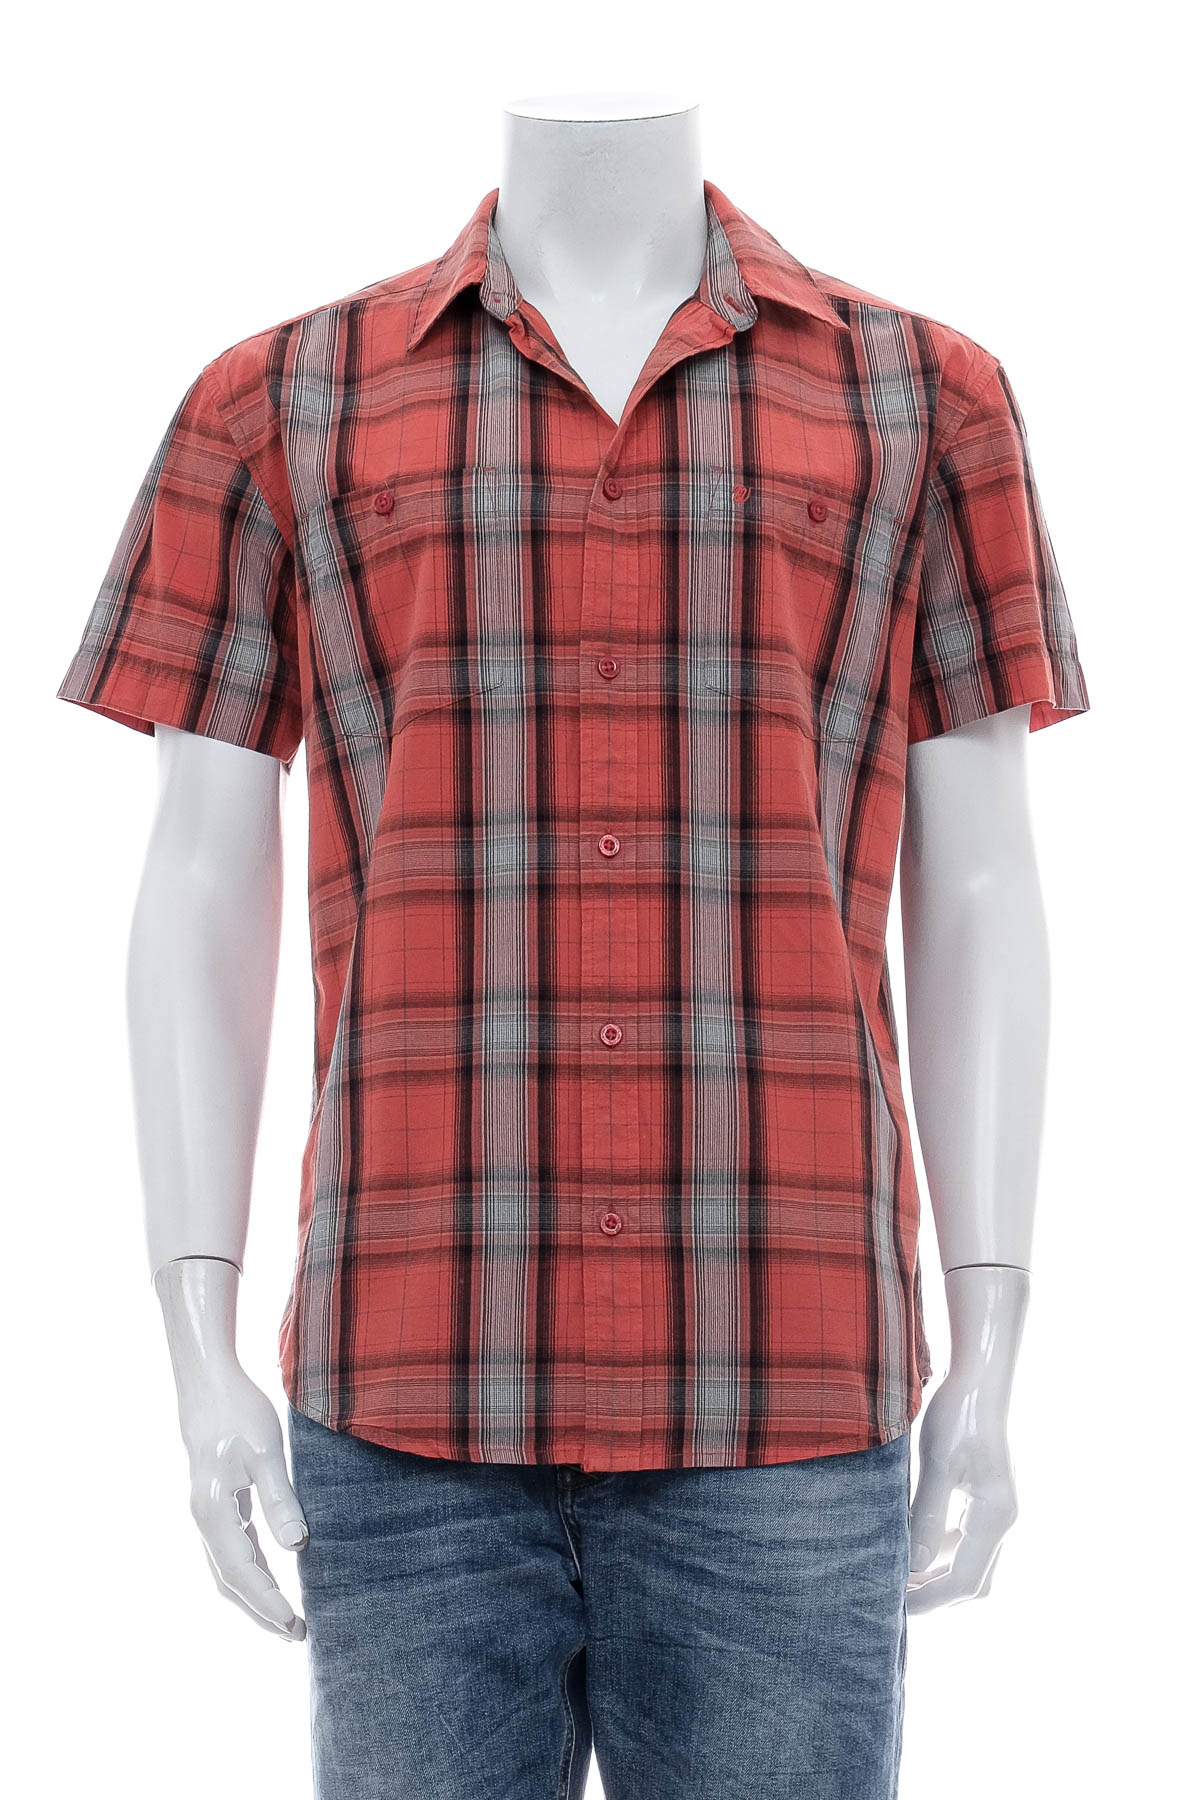 Ανδρικό πουκάμισο - Wrangler - 0